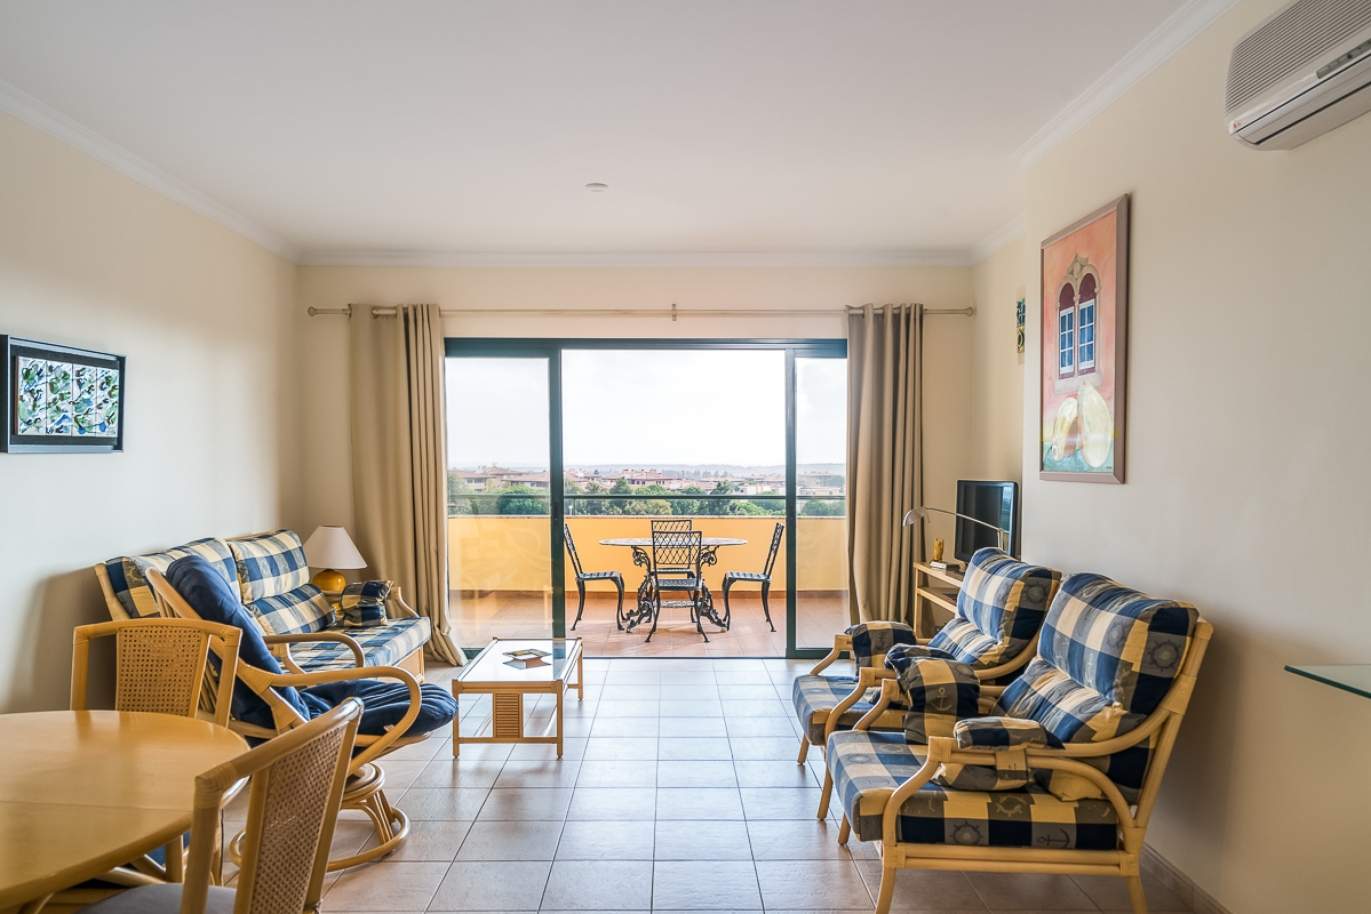 Venda de apartamento com piscina em Vilamoura, Algarve, Portugal_113460